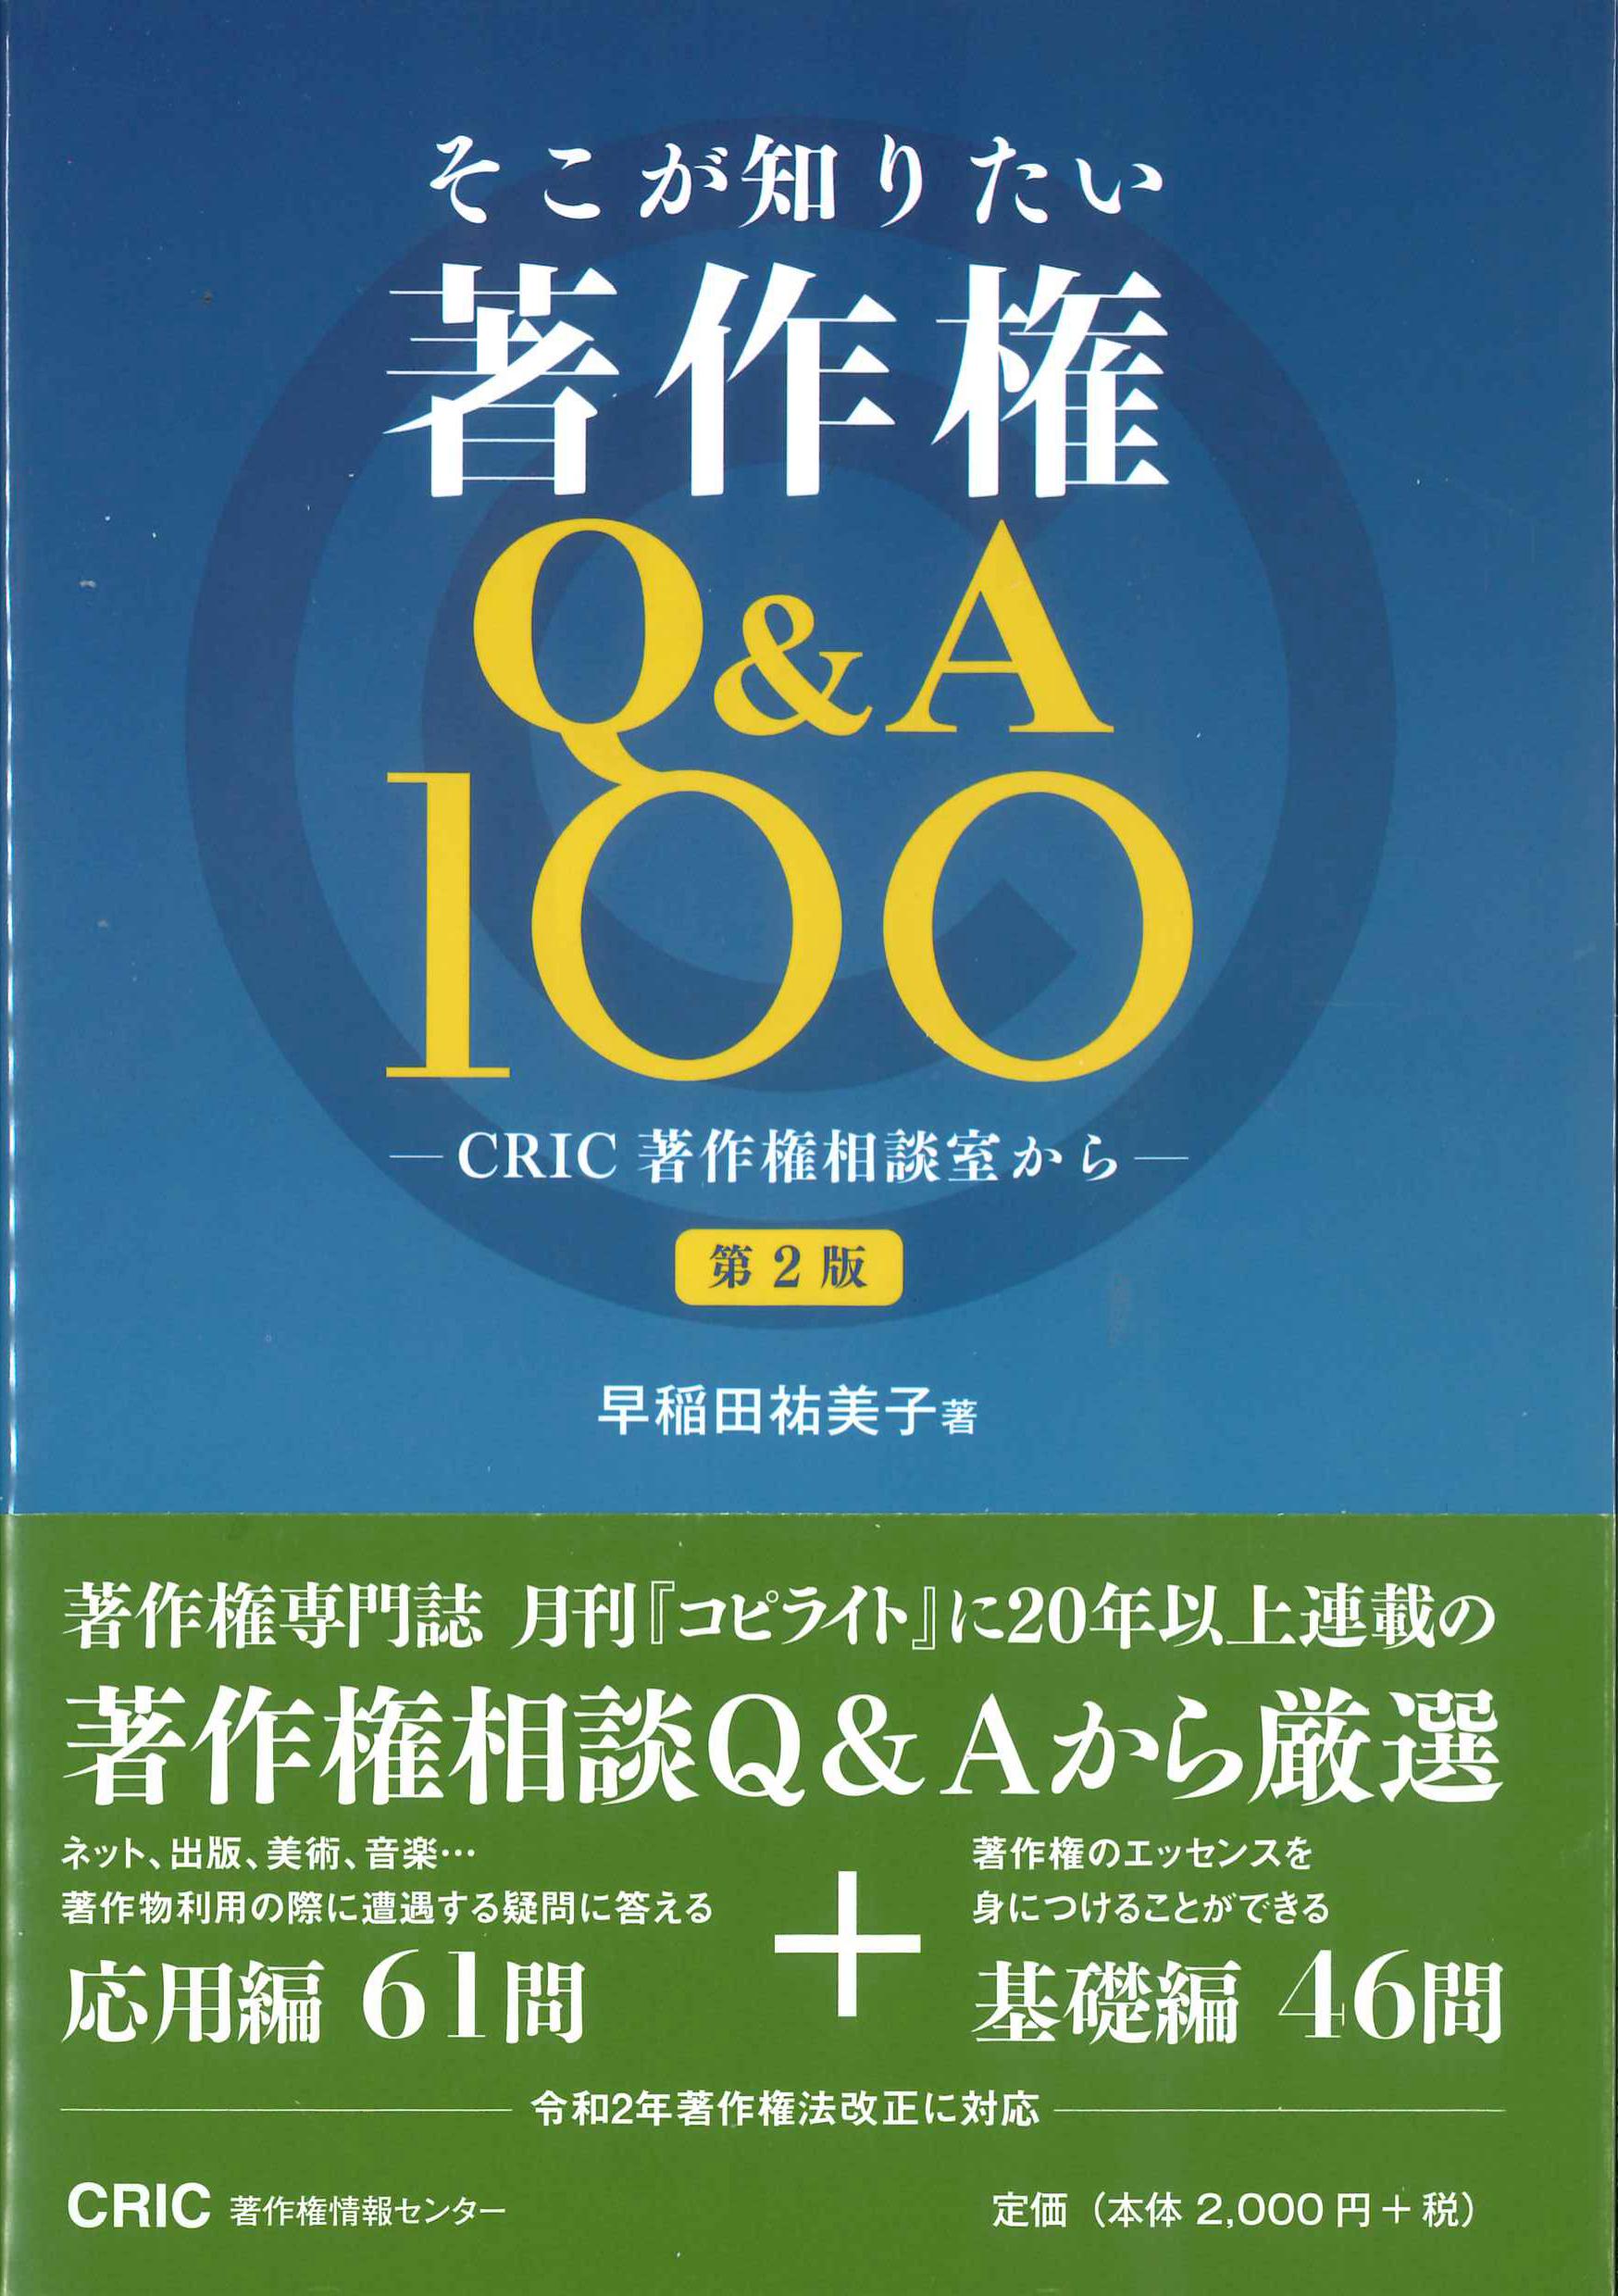 そこが知りたい 著作権Q&A100 第2版 | 株式会社かんぽうかんぽう